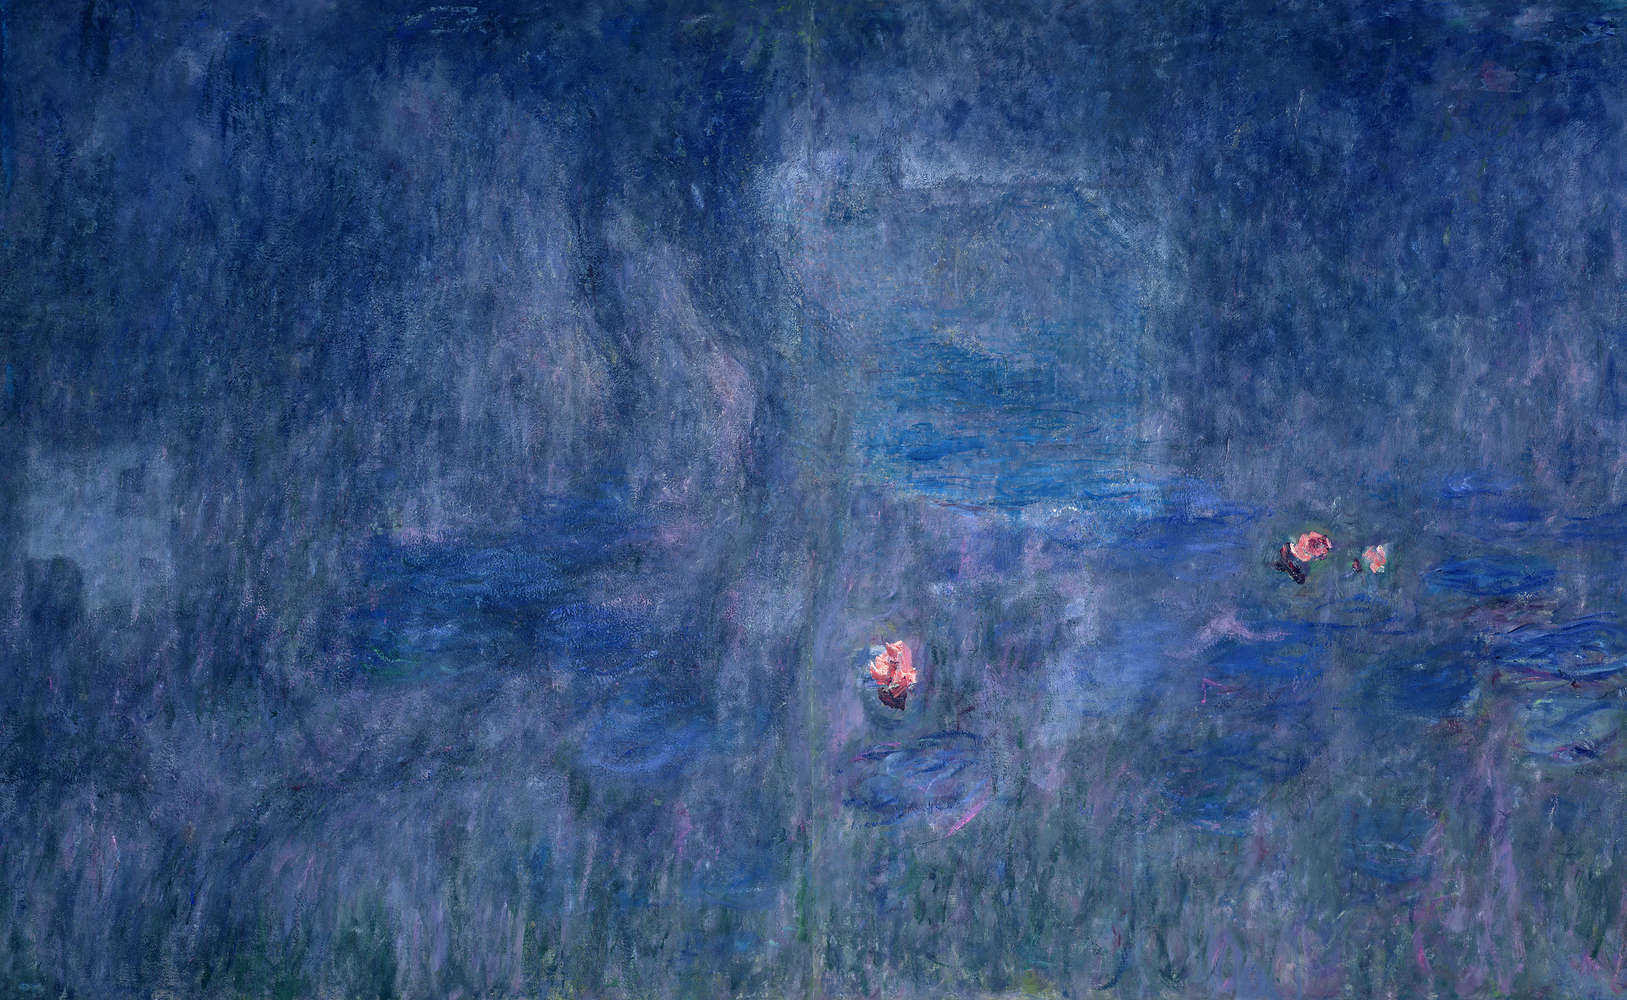             Waterlelies: weerspiegeling van de bomen" muurschildering van Claude Monet
        